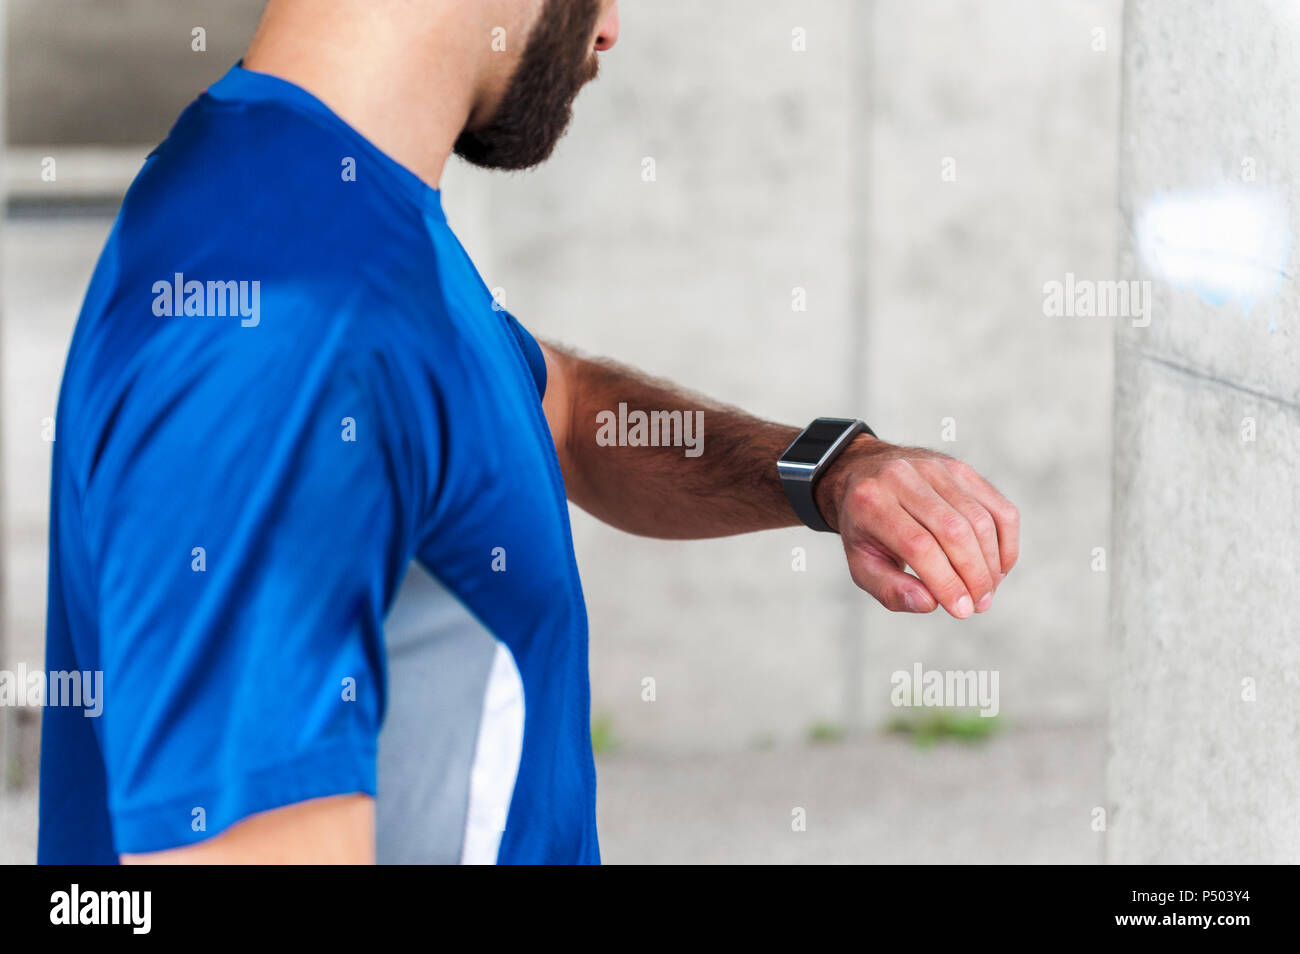 Mensch, der hatte eine Pause von der laufenden Kontrolle der Zeit auf einem smartwatch Stockfoto